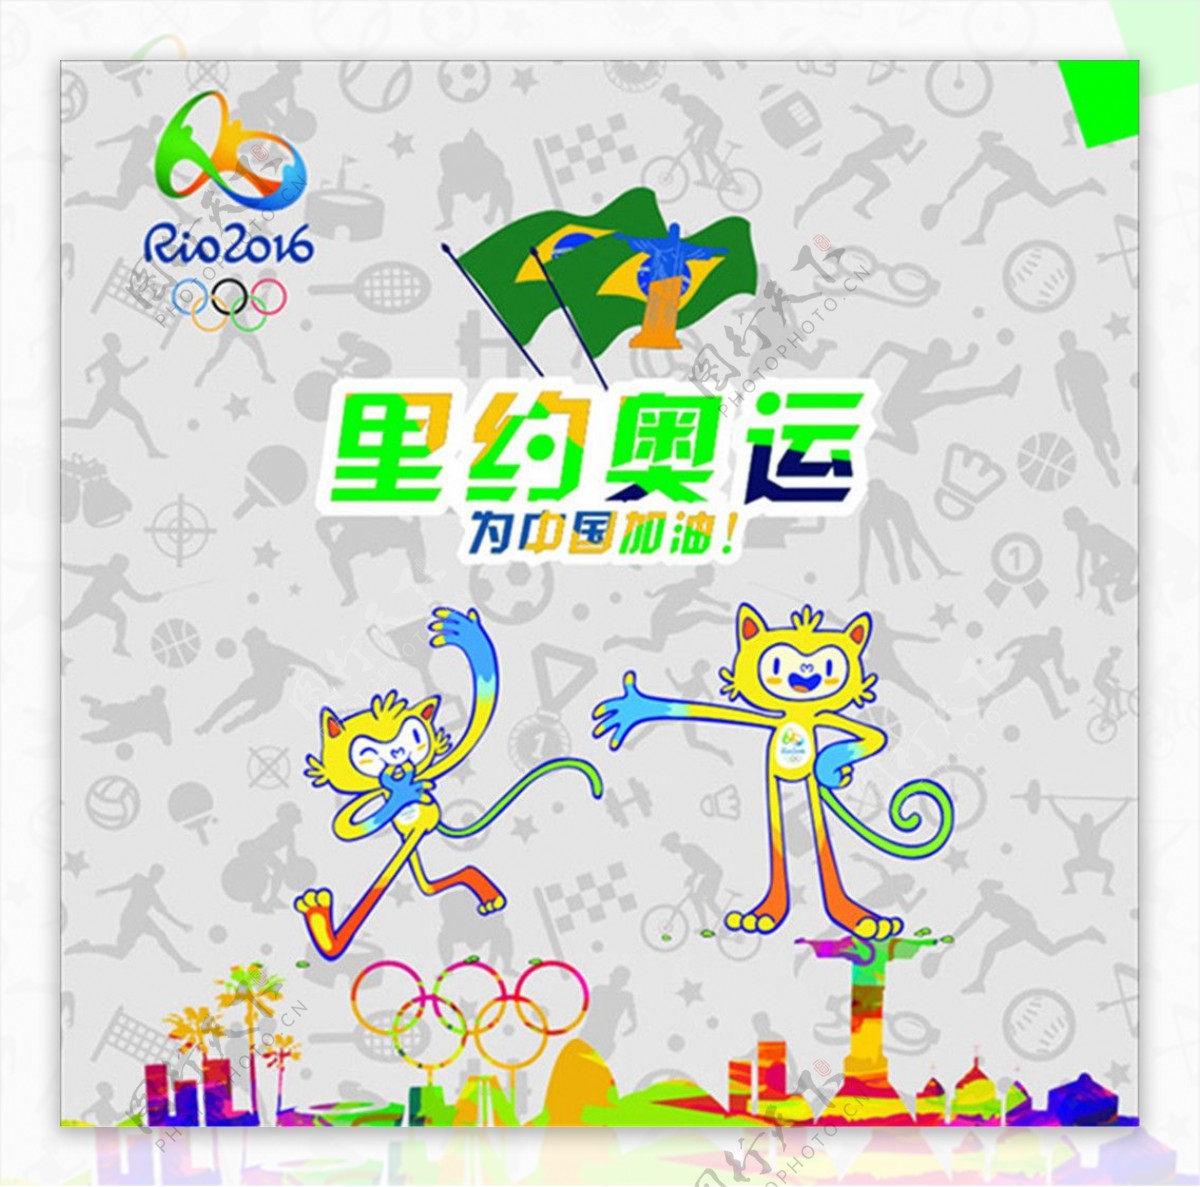 奥运会为中国加油